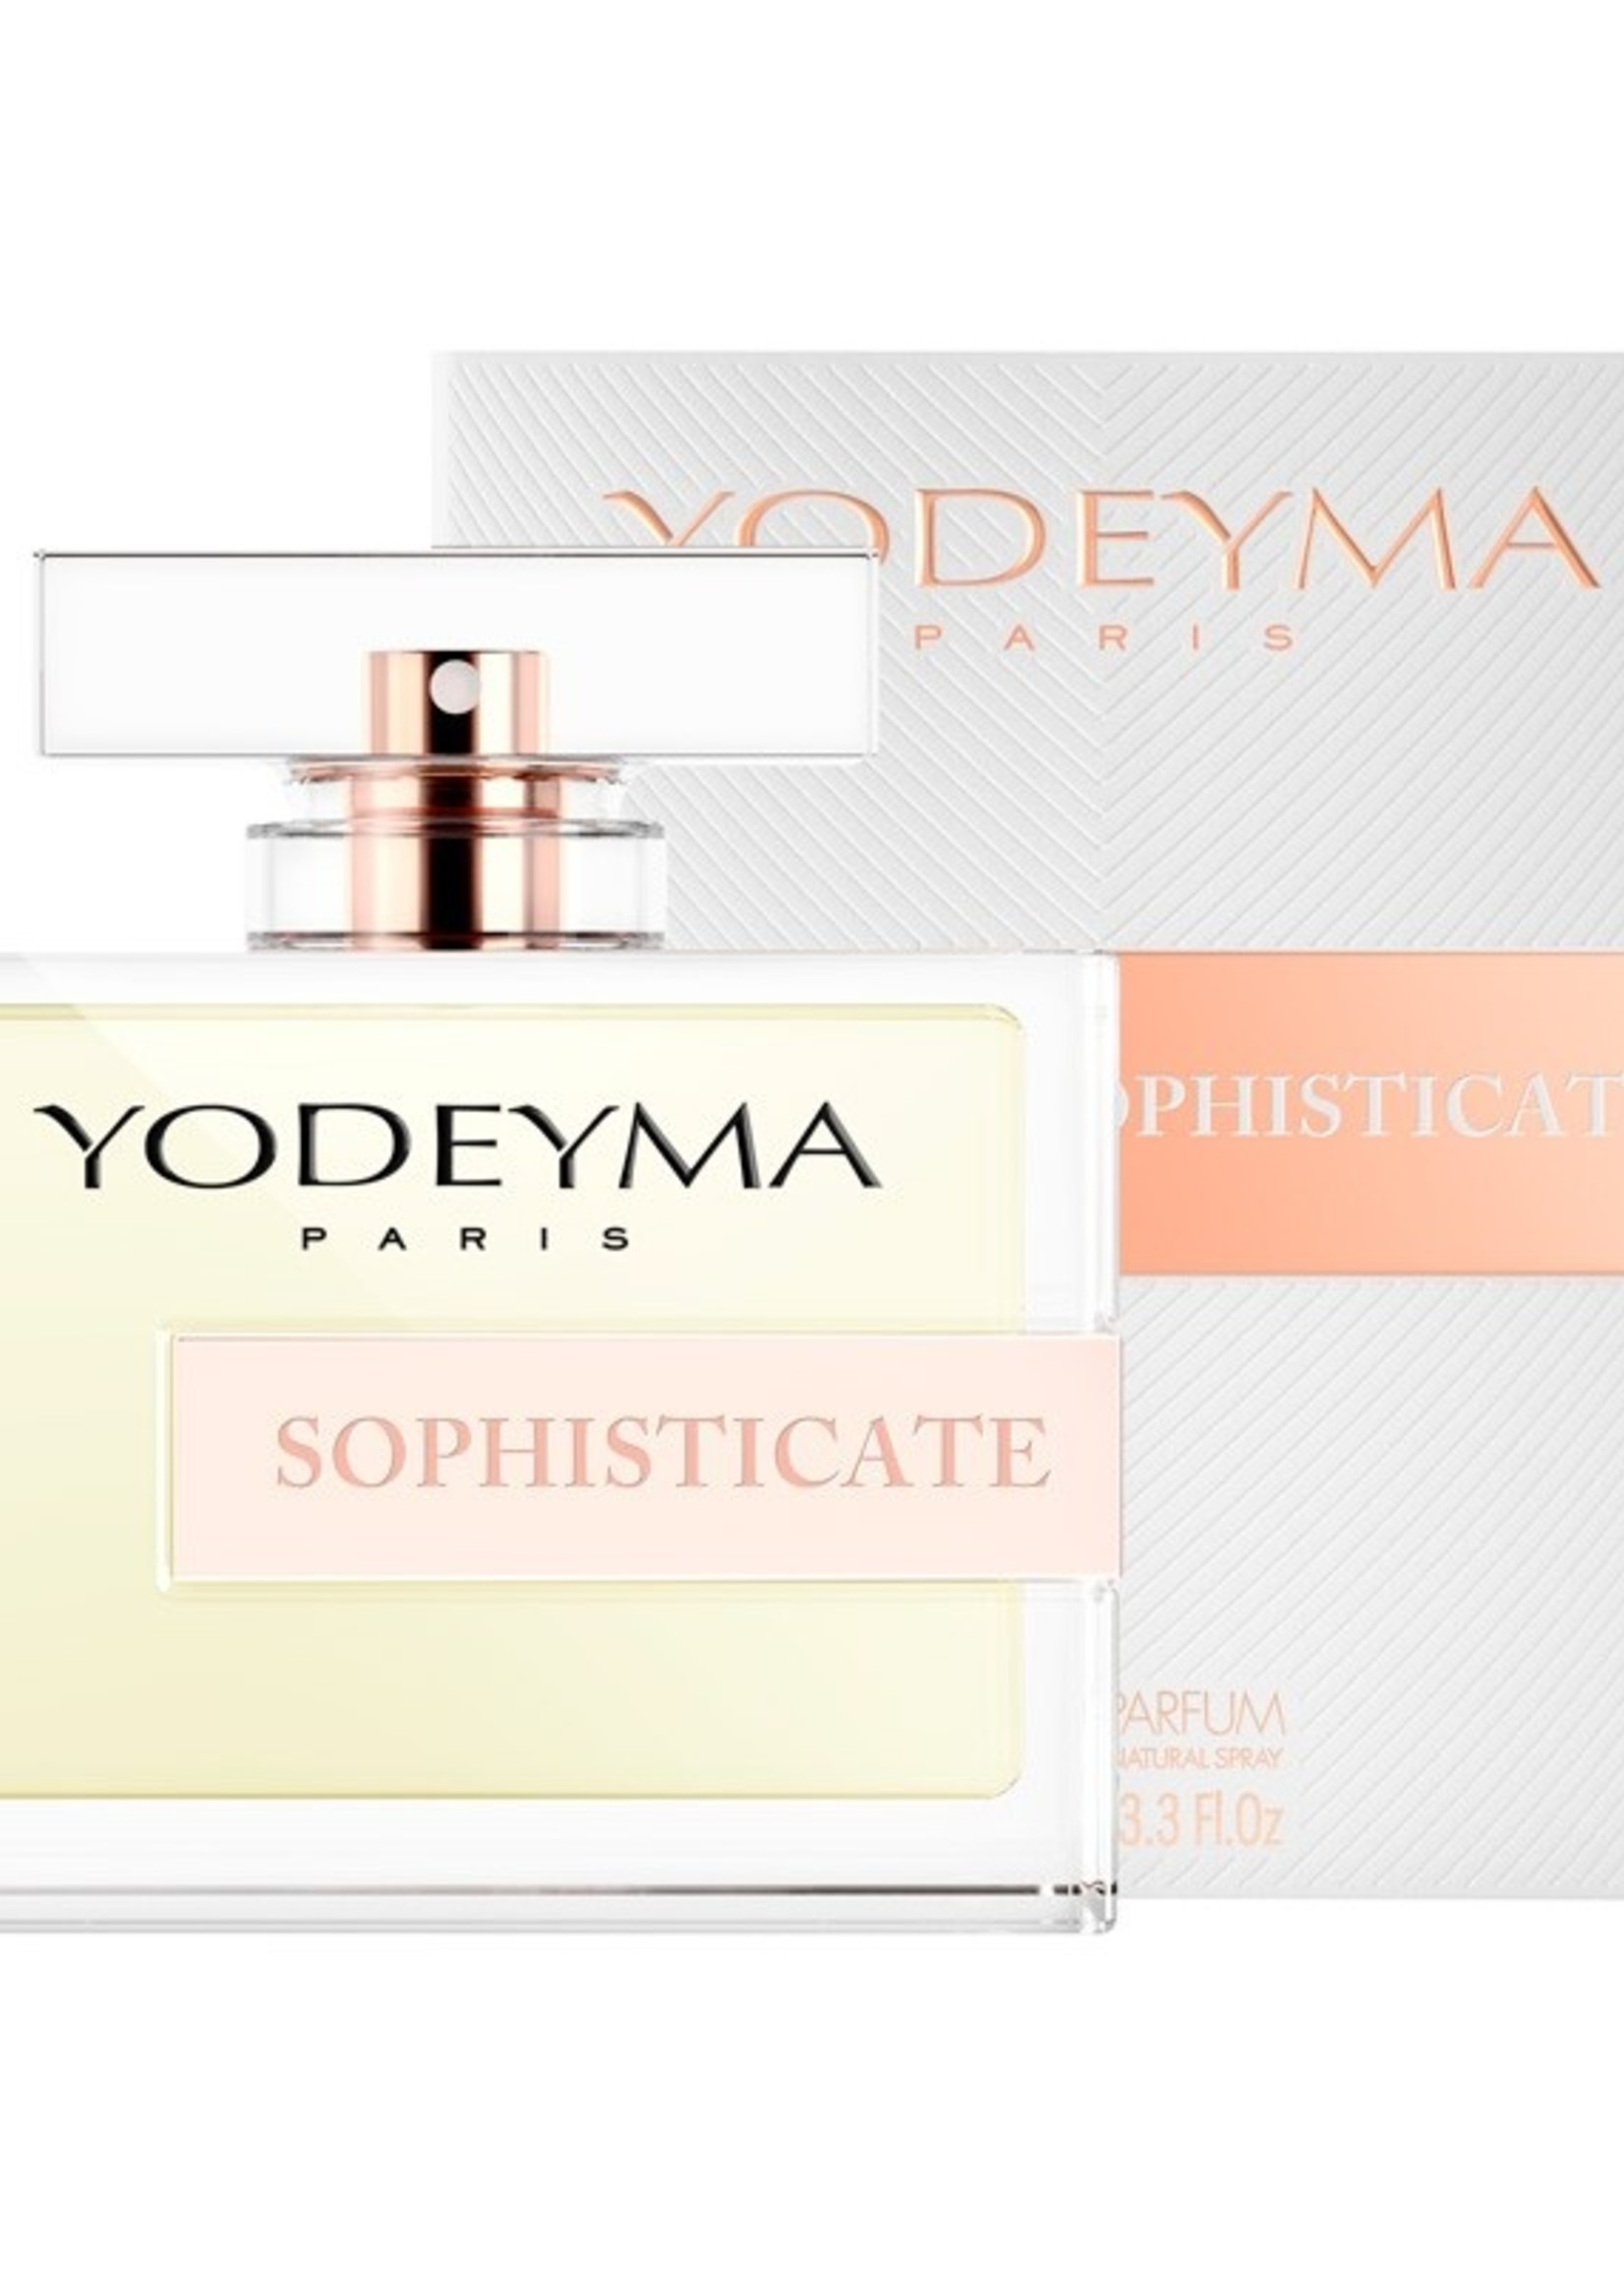 Yodeyma Parfums SOPHISTICATE Eau de Parfum 100 ml.